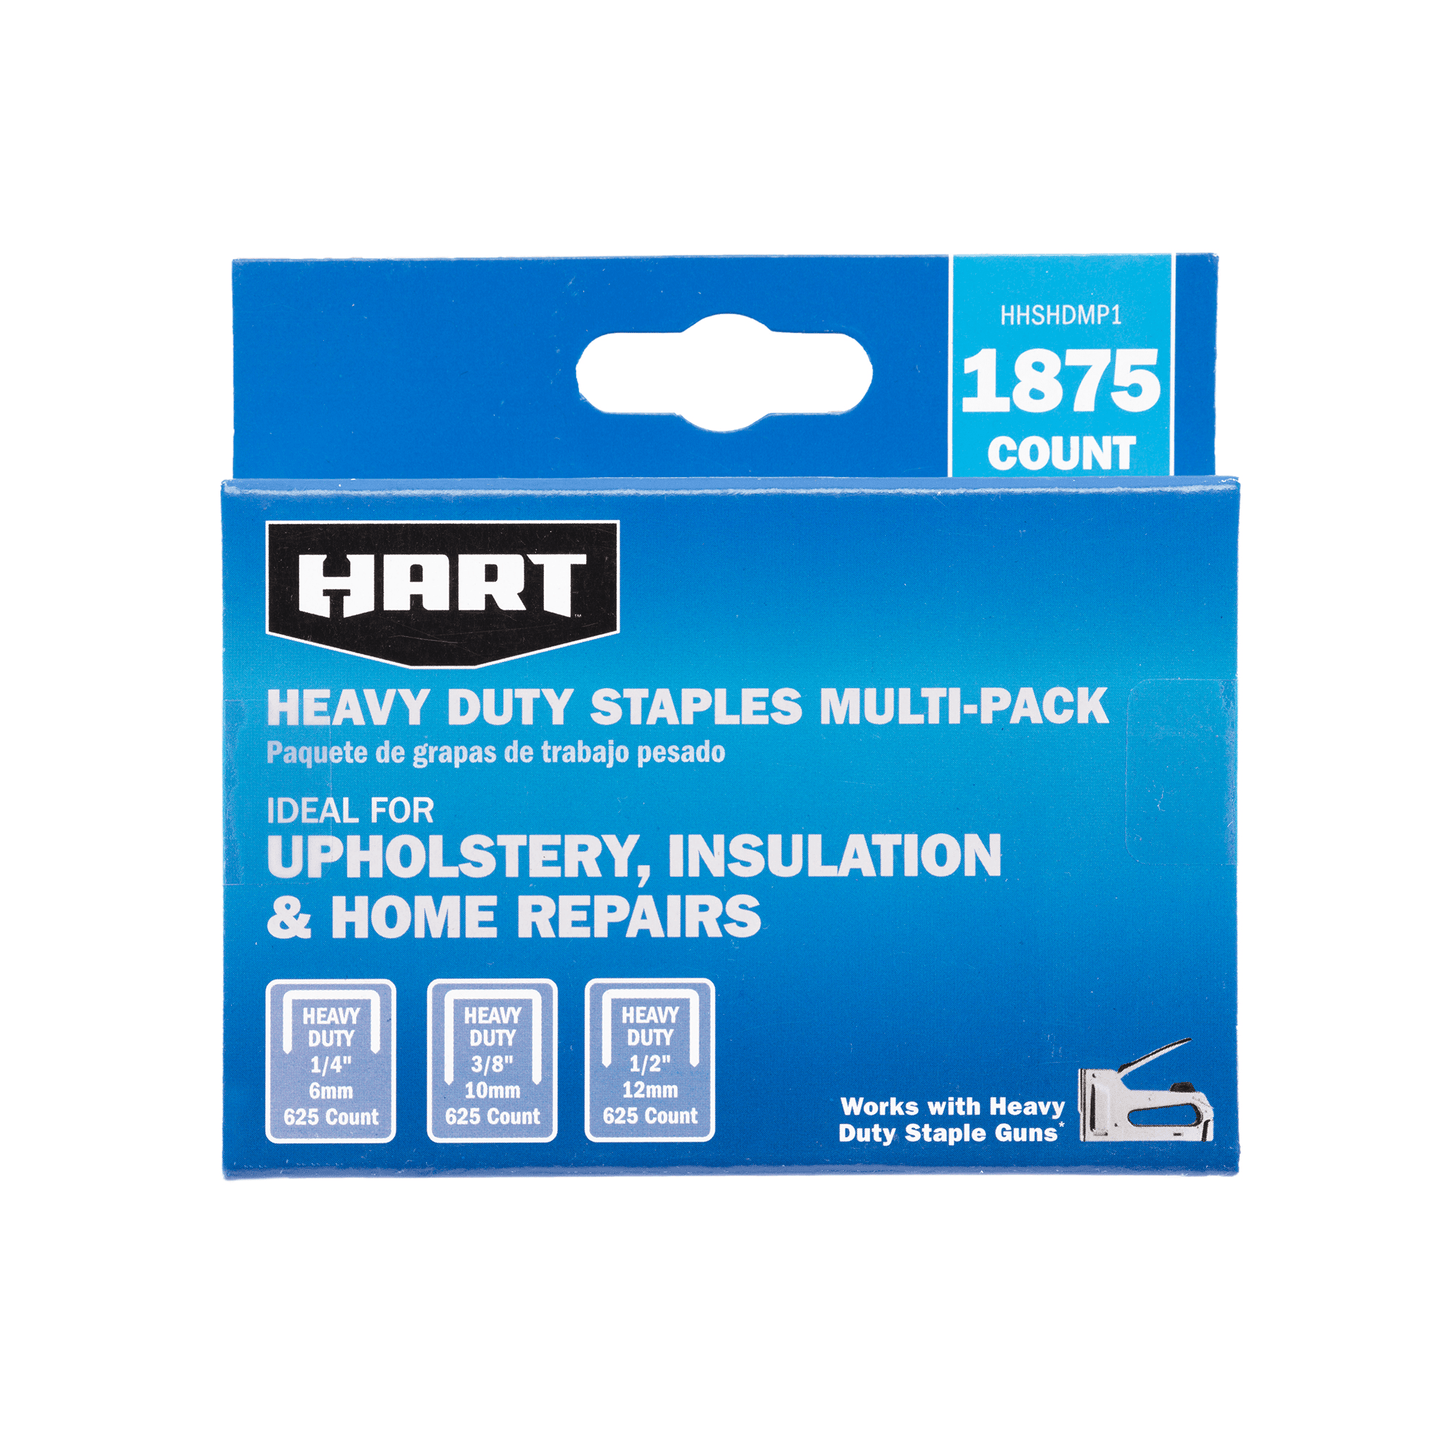 Heavy Duty Staples Multi-pack